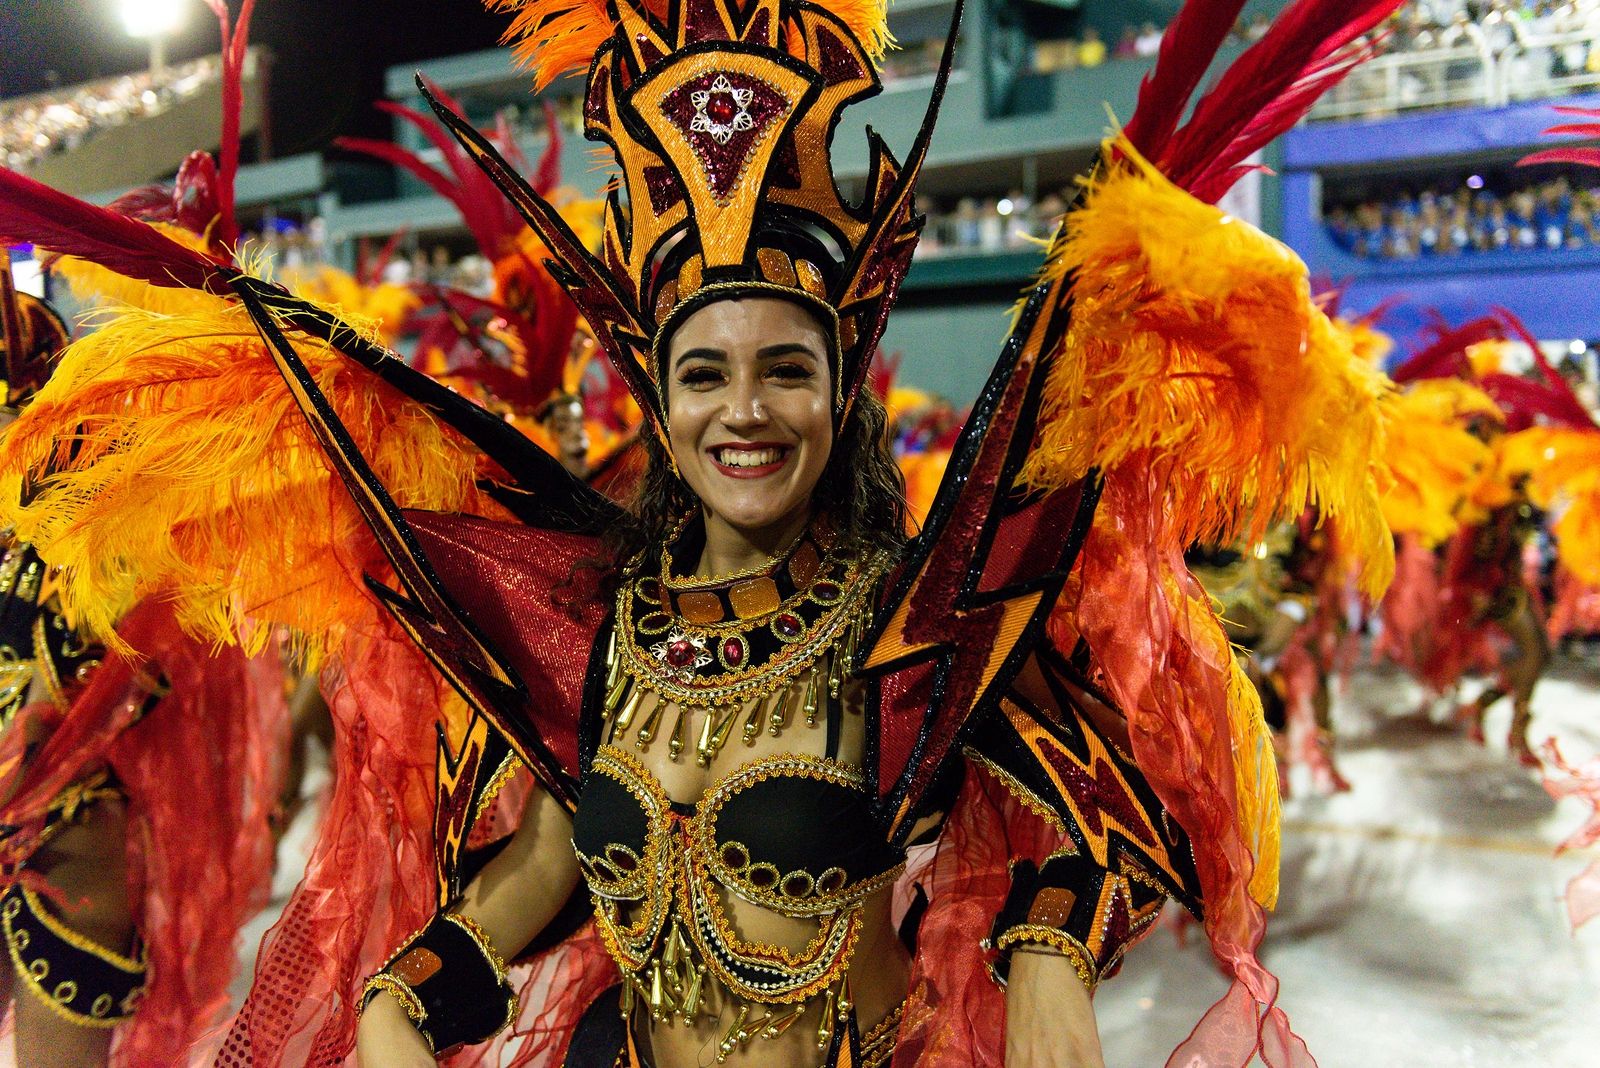 ¿Cuándo es Carnaval en 2020? ¿Cómo se decide esa fecha cada año?